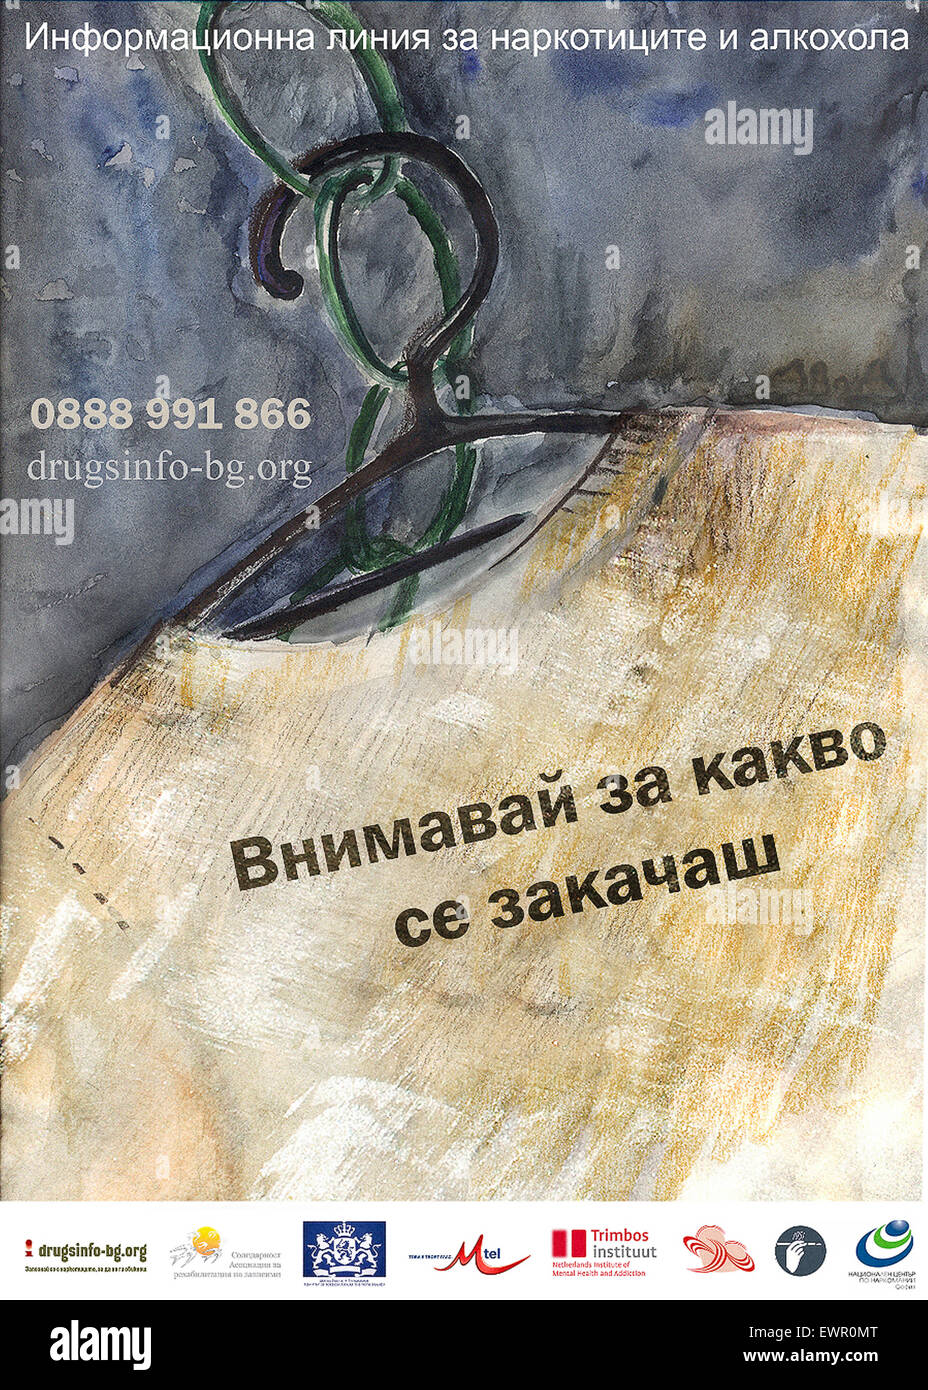 Flyer pubblicità nazionale bulgara di droghe e di alcol Helpline e sito web rilasciato nel 2009. Vedere la descrizione per maggiori informazioni. Foto Stock